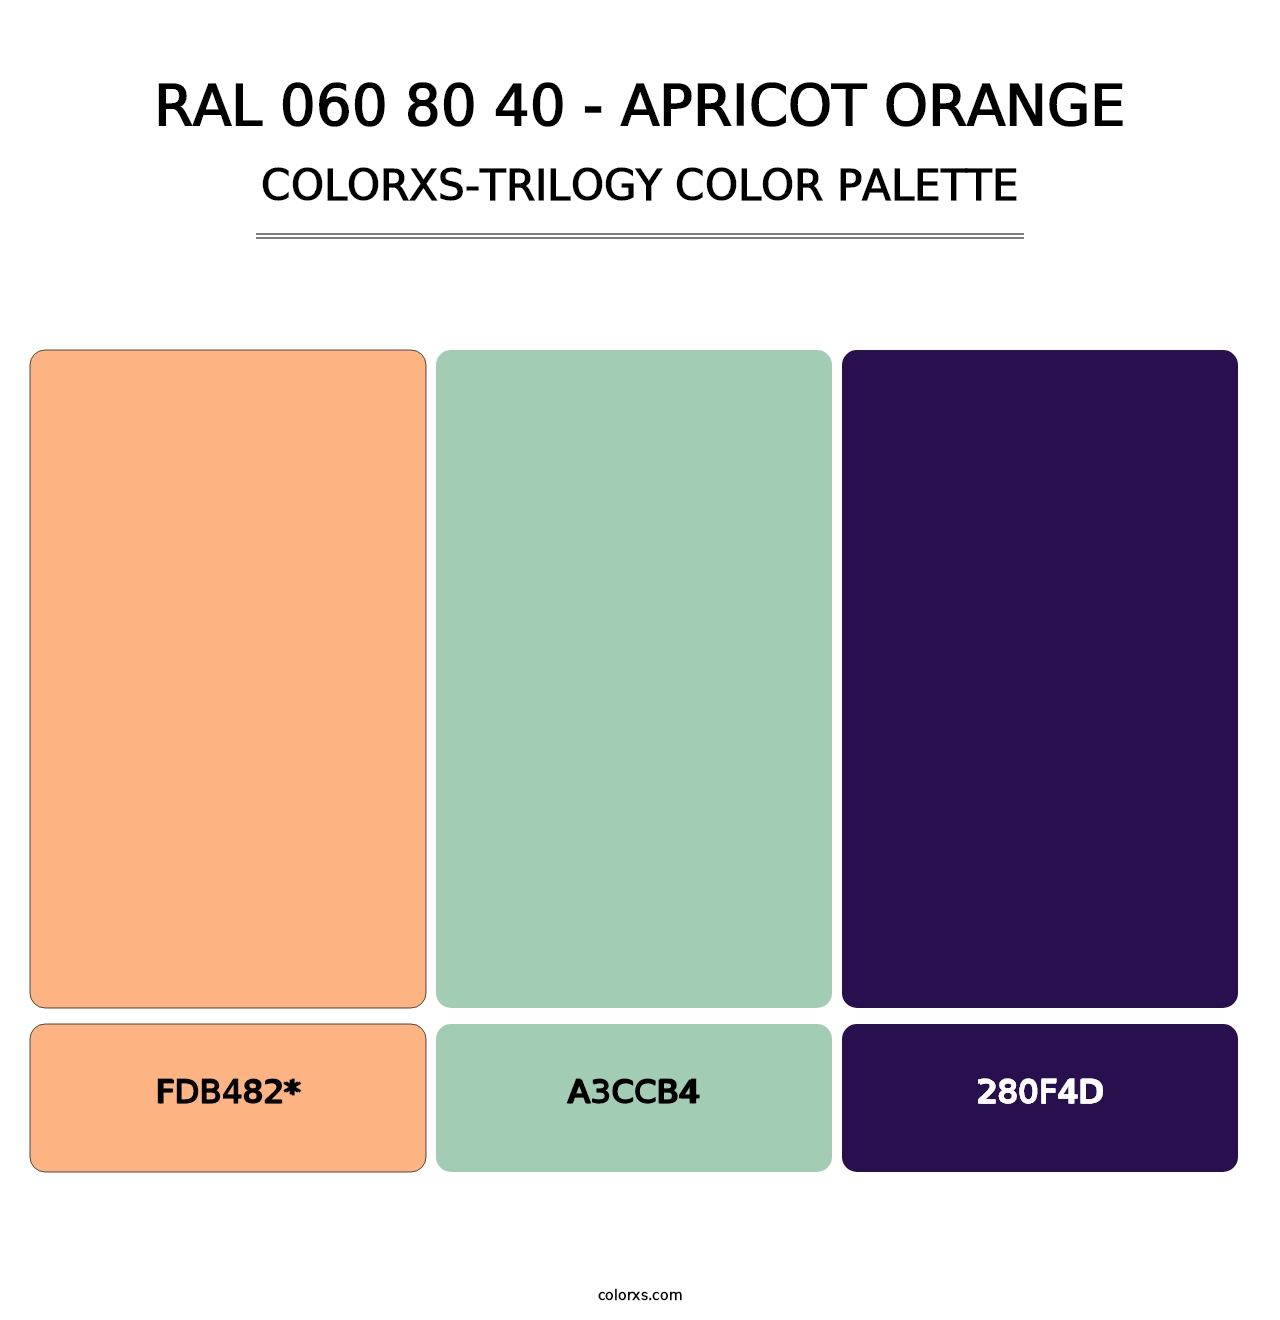 RAL 060 80 40 - Apricot Orange - Colorxs Trilogy Palette